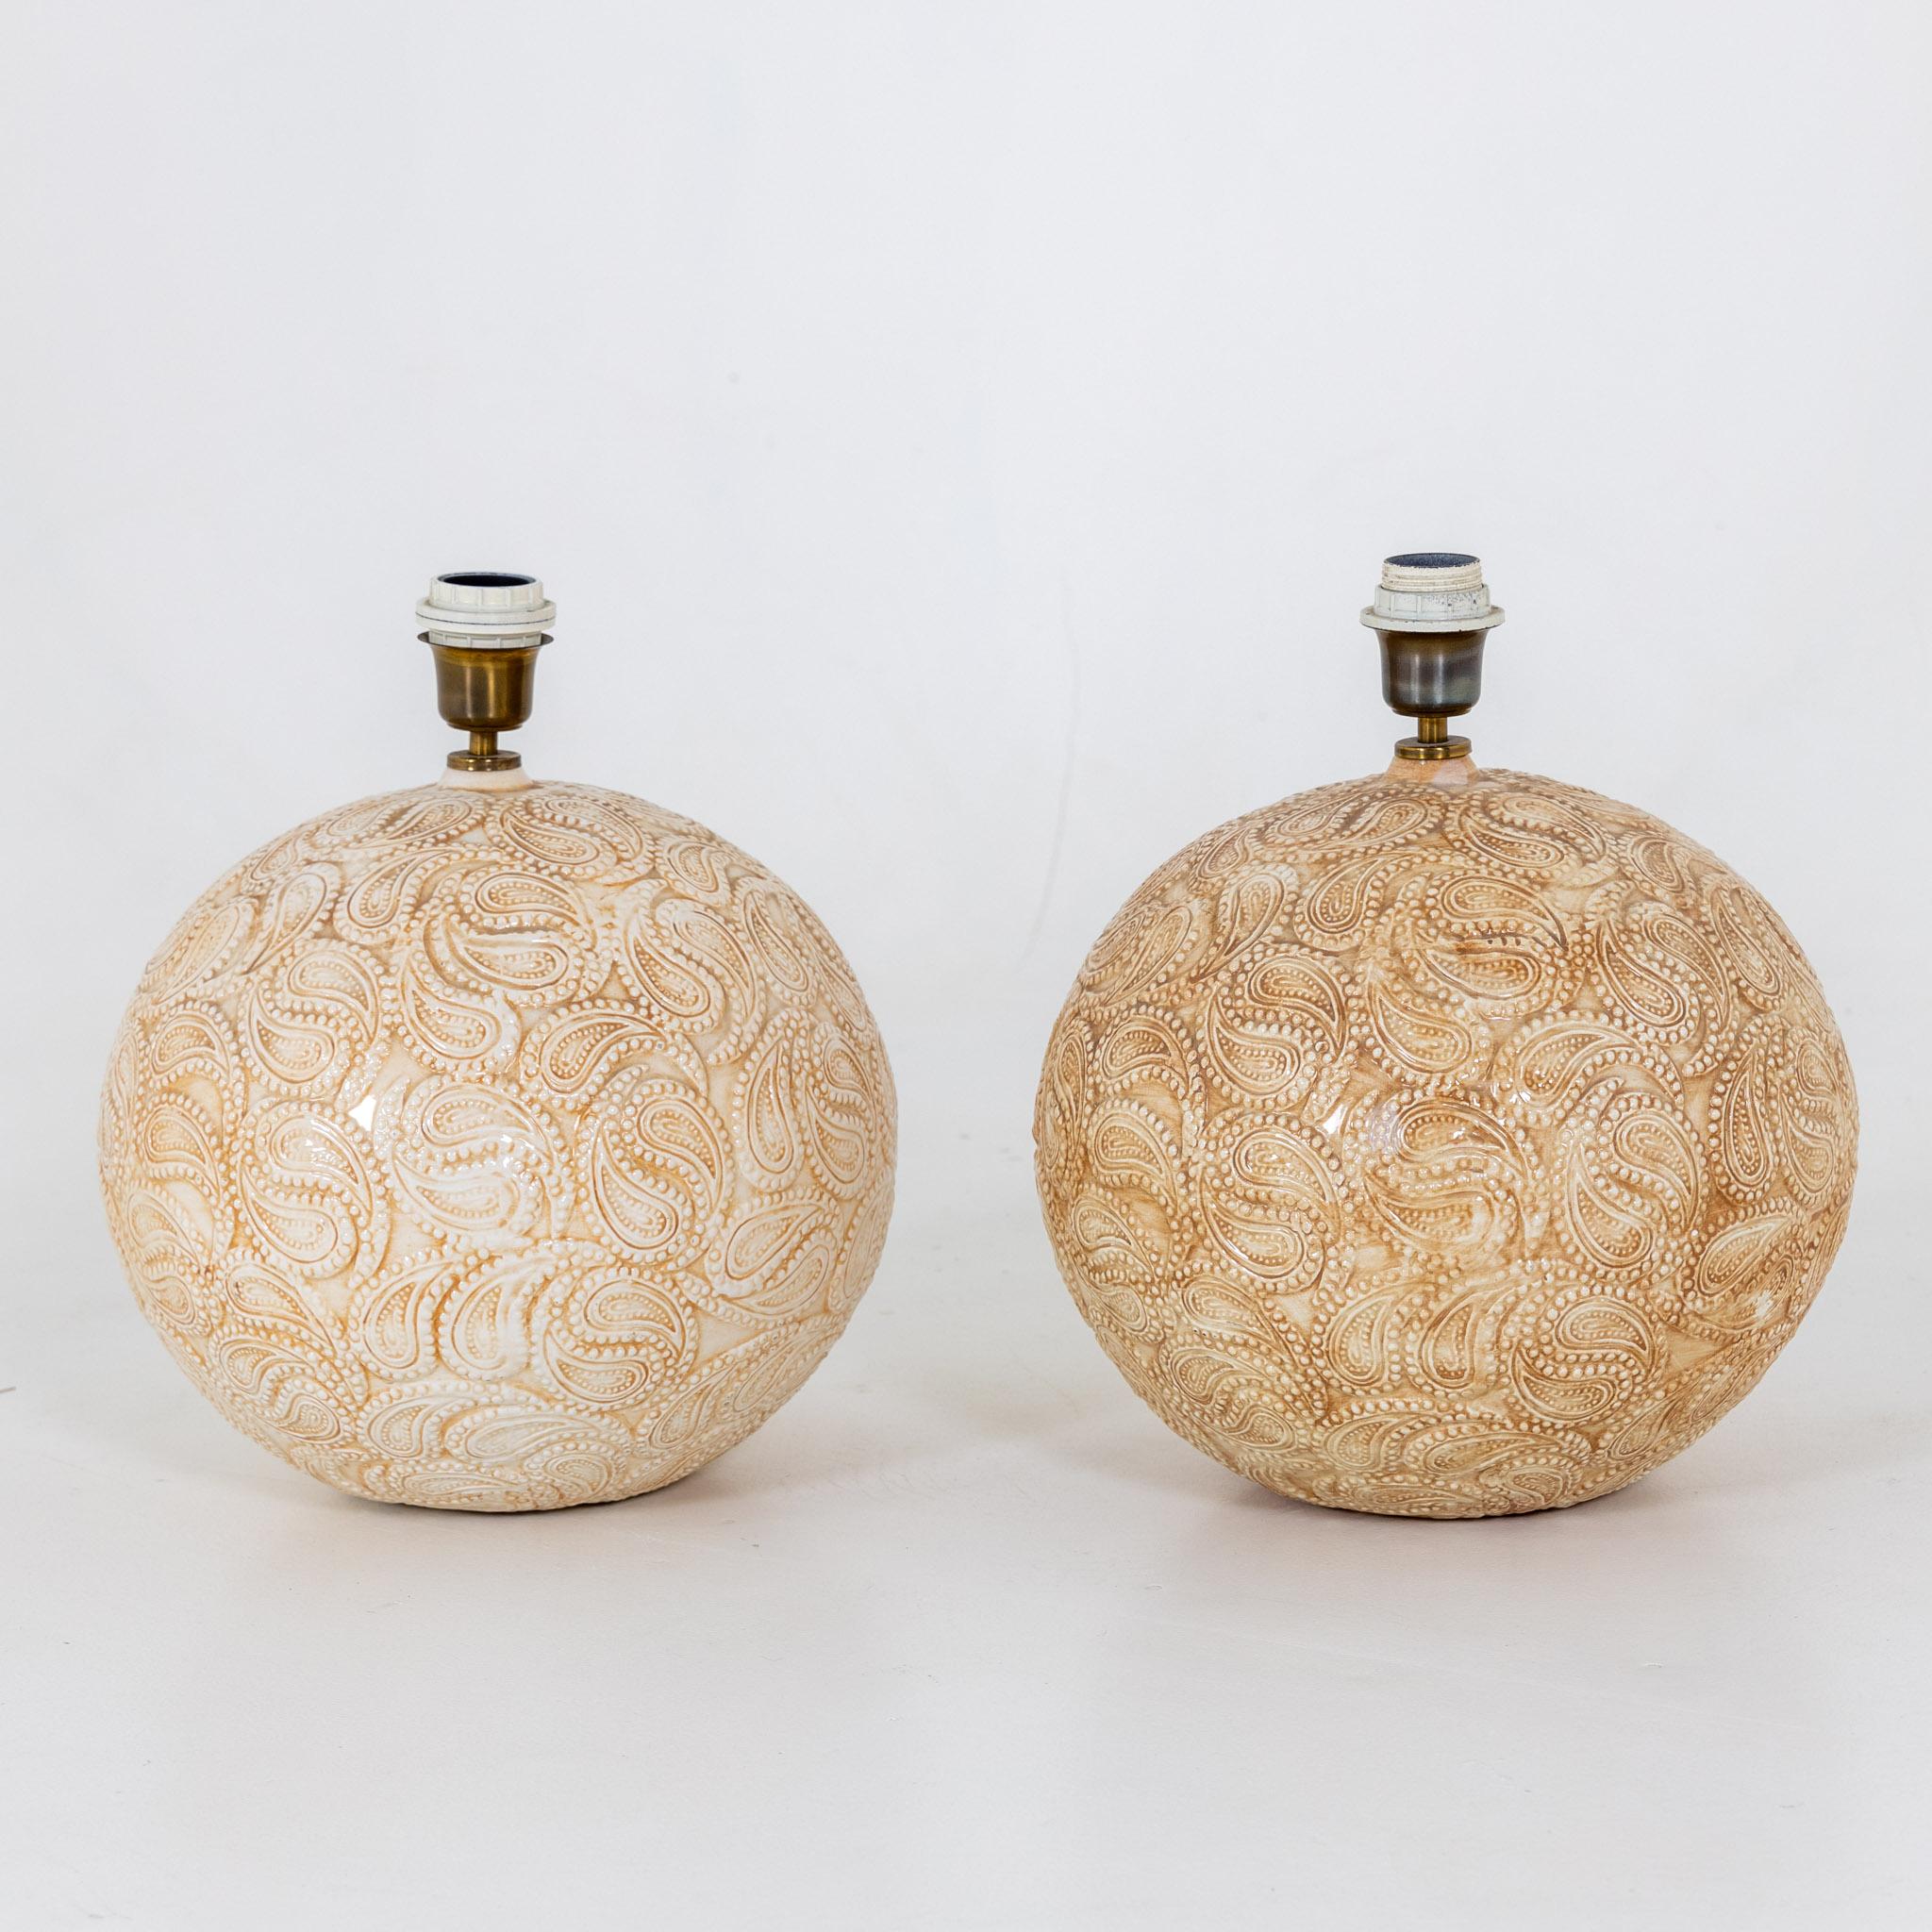 Paar Tischlampen mit kugelförmigen Körpern aus glasierter Keramik und Paisleymuster an der Wand.